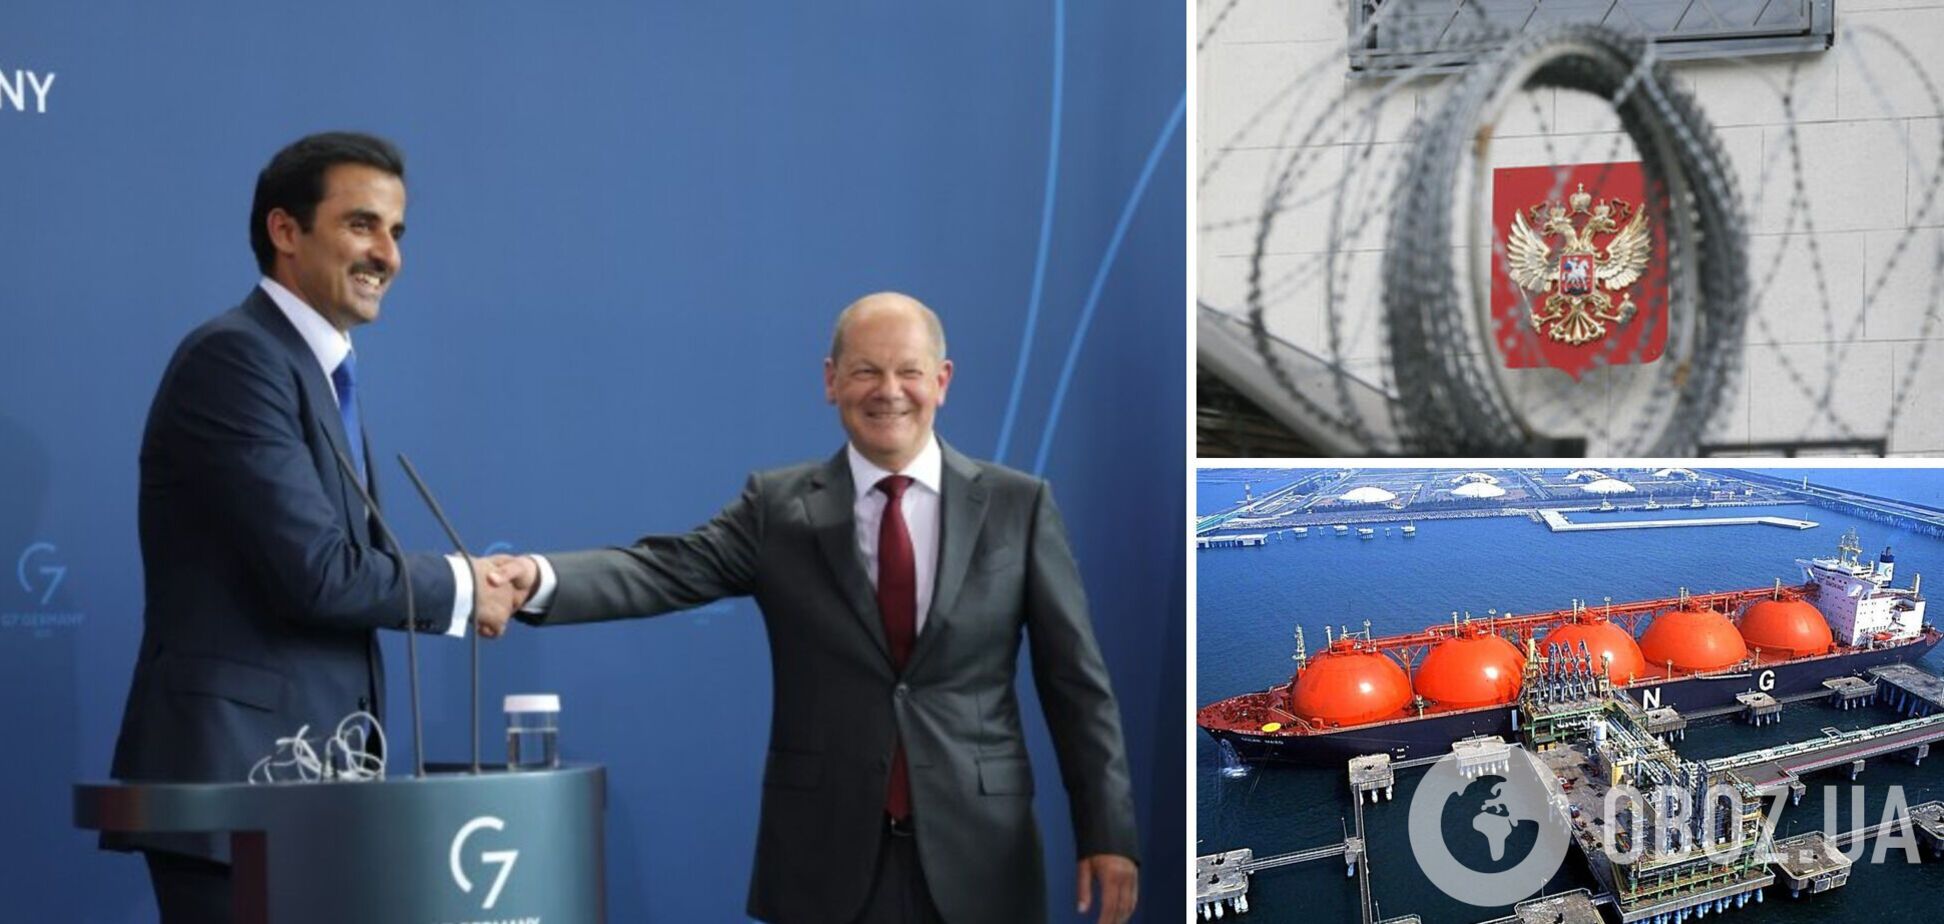 Германия подписала газовый контракт с Катаром